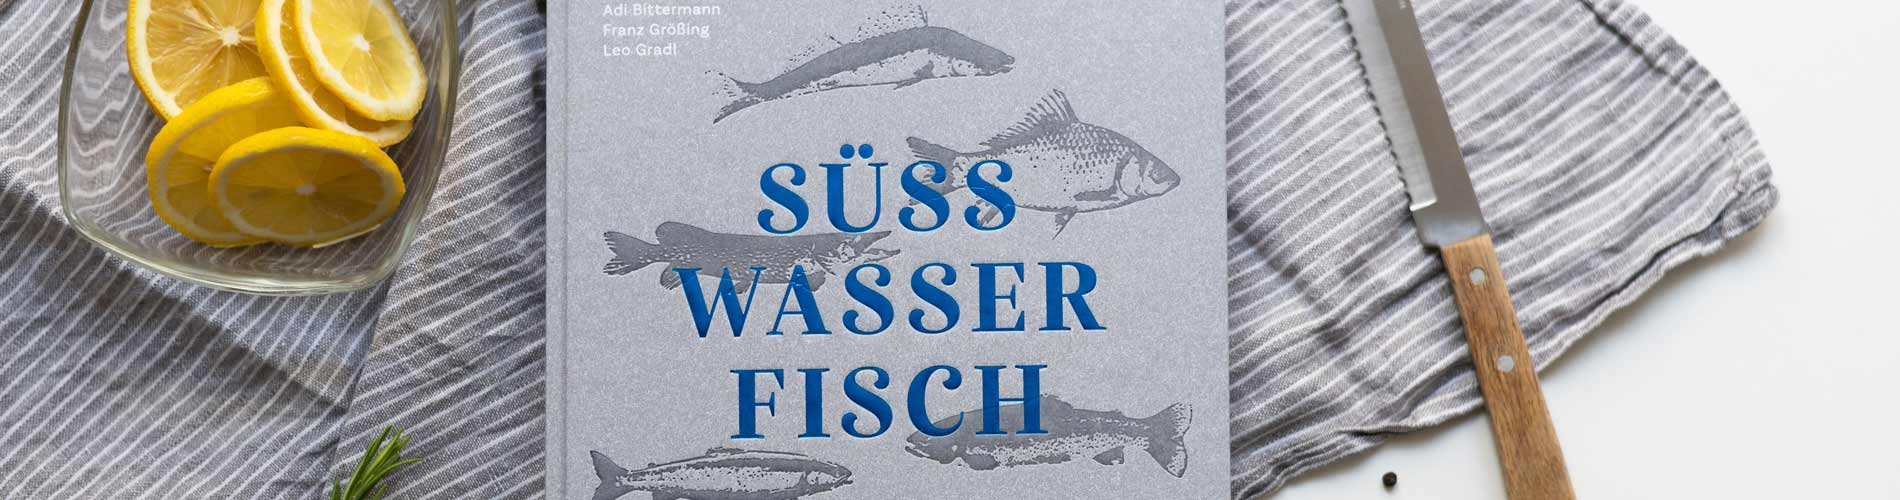 PER_Suesswasserfisch_A-480x266.jpg